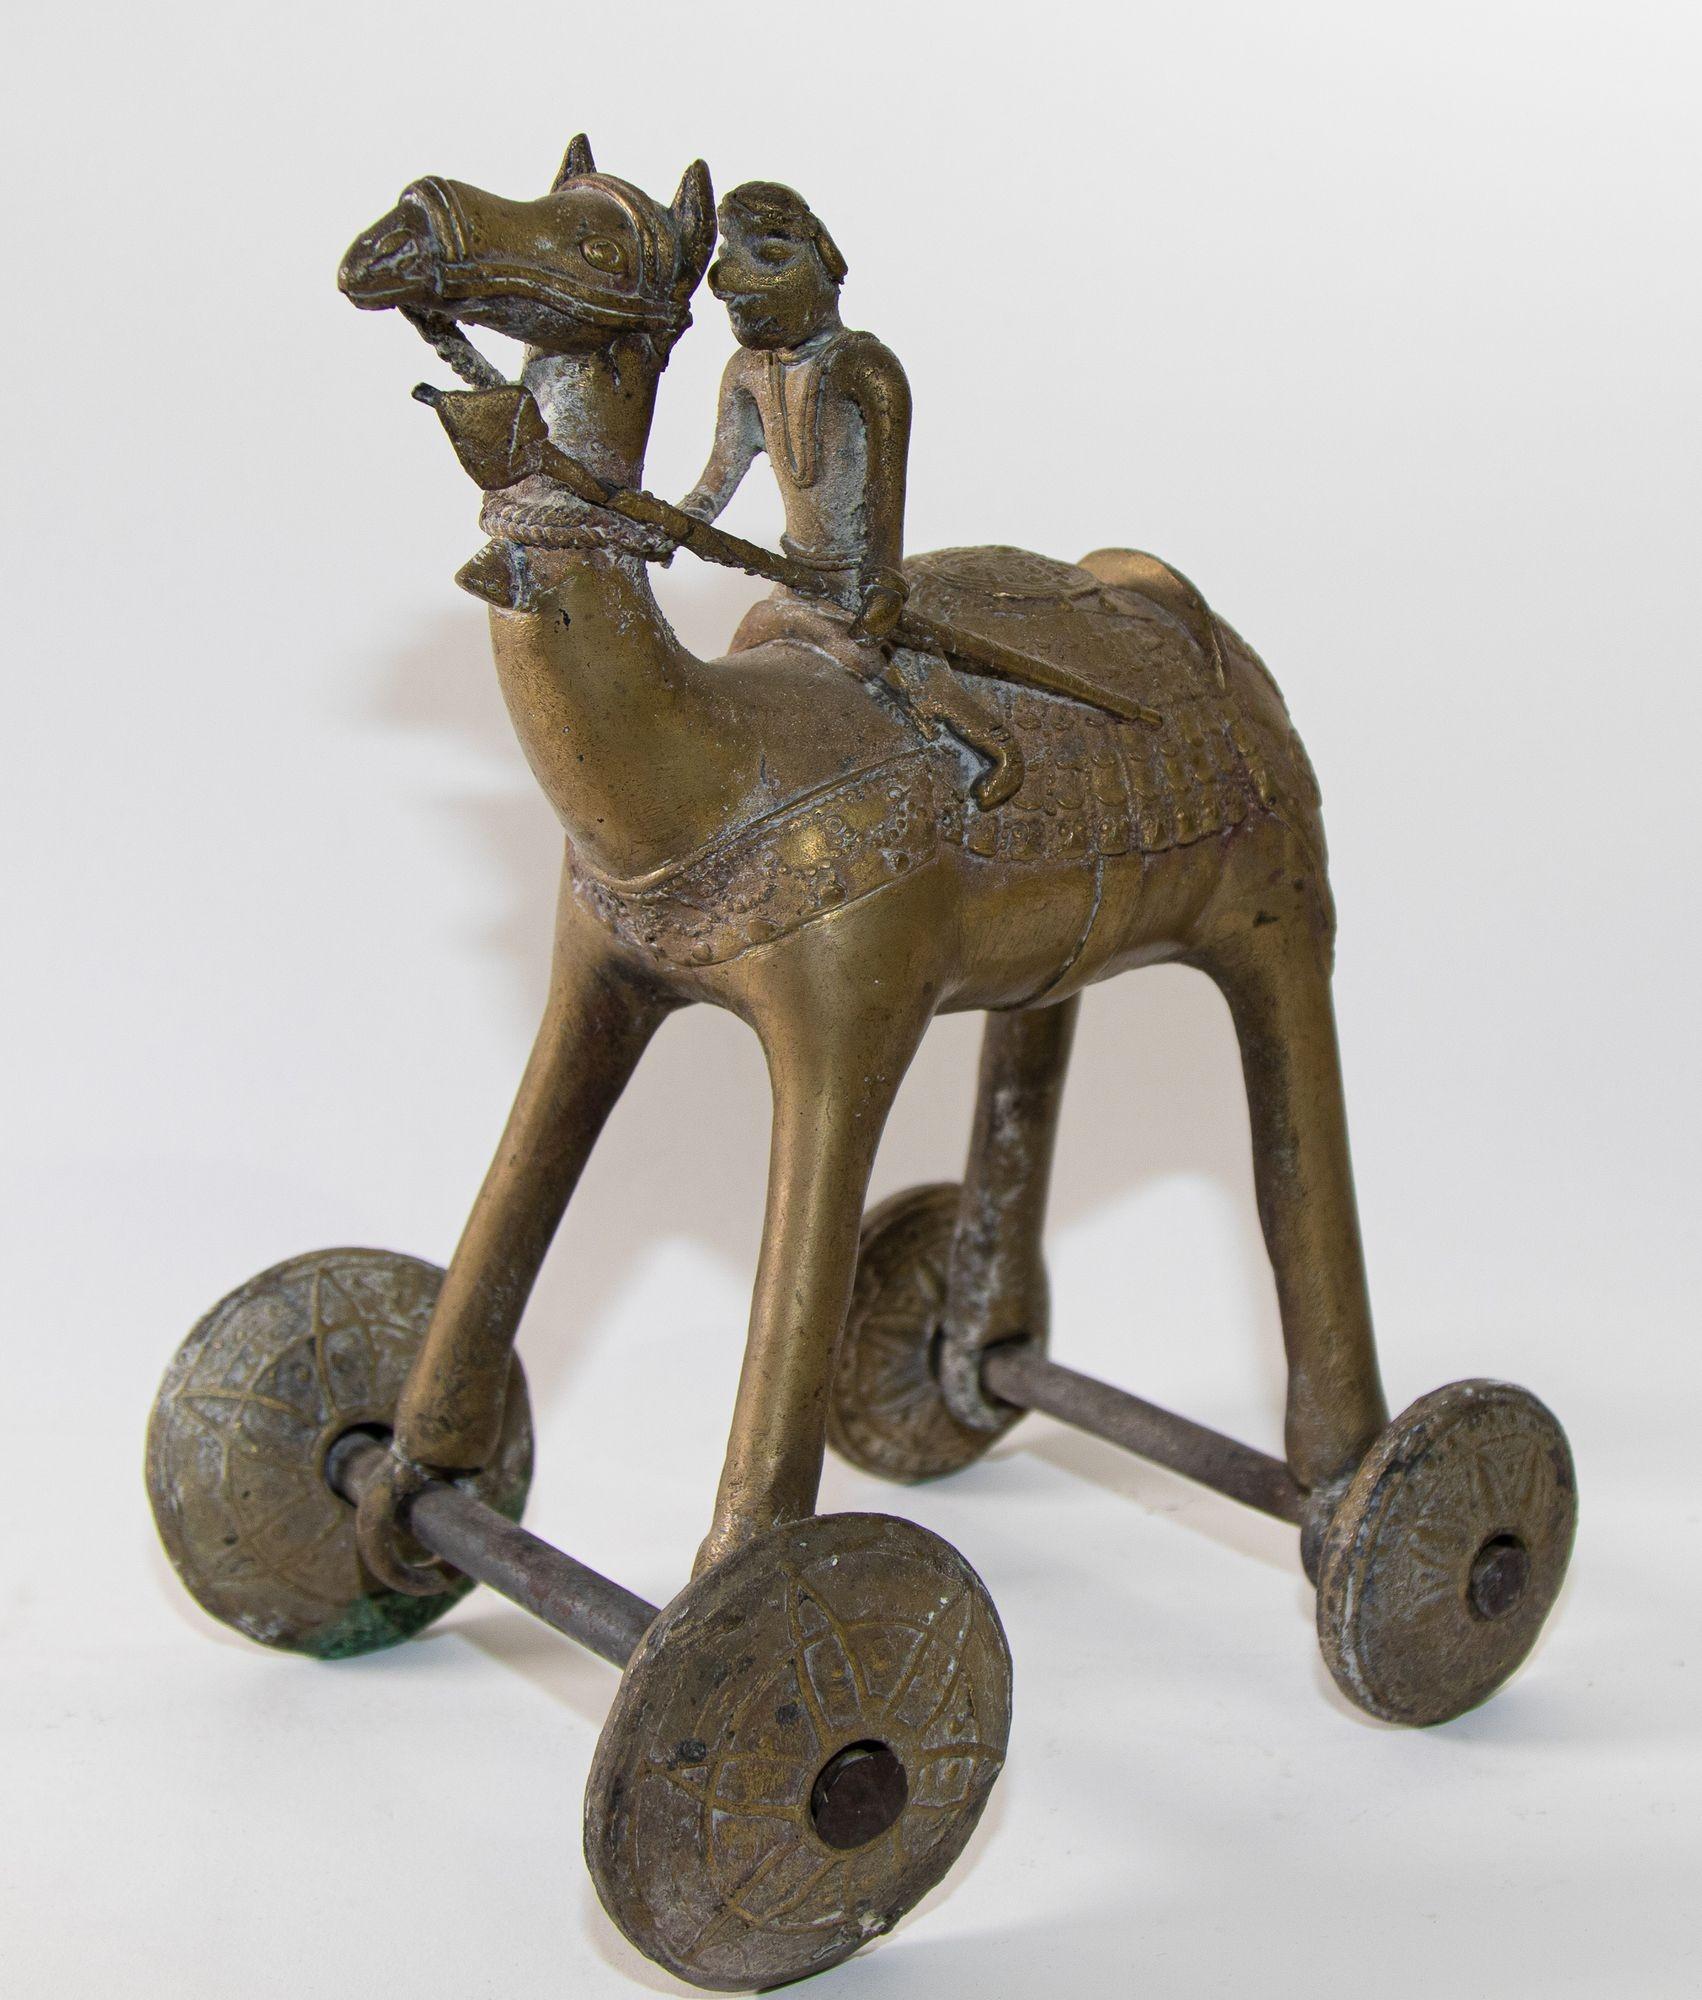 Eine Szene aus Ramakian oder Ramayan, dem indischen Epos Rama und Sita.
Großes und schweres antikes indisches Tempel-Spielzeug-Kamel aus Metall, Bronze-Kamel auf Rädern.
Kamel mit Reiter auf Rädern, schöne Kinderspielzeugskulptur aus Metall.
Großes